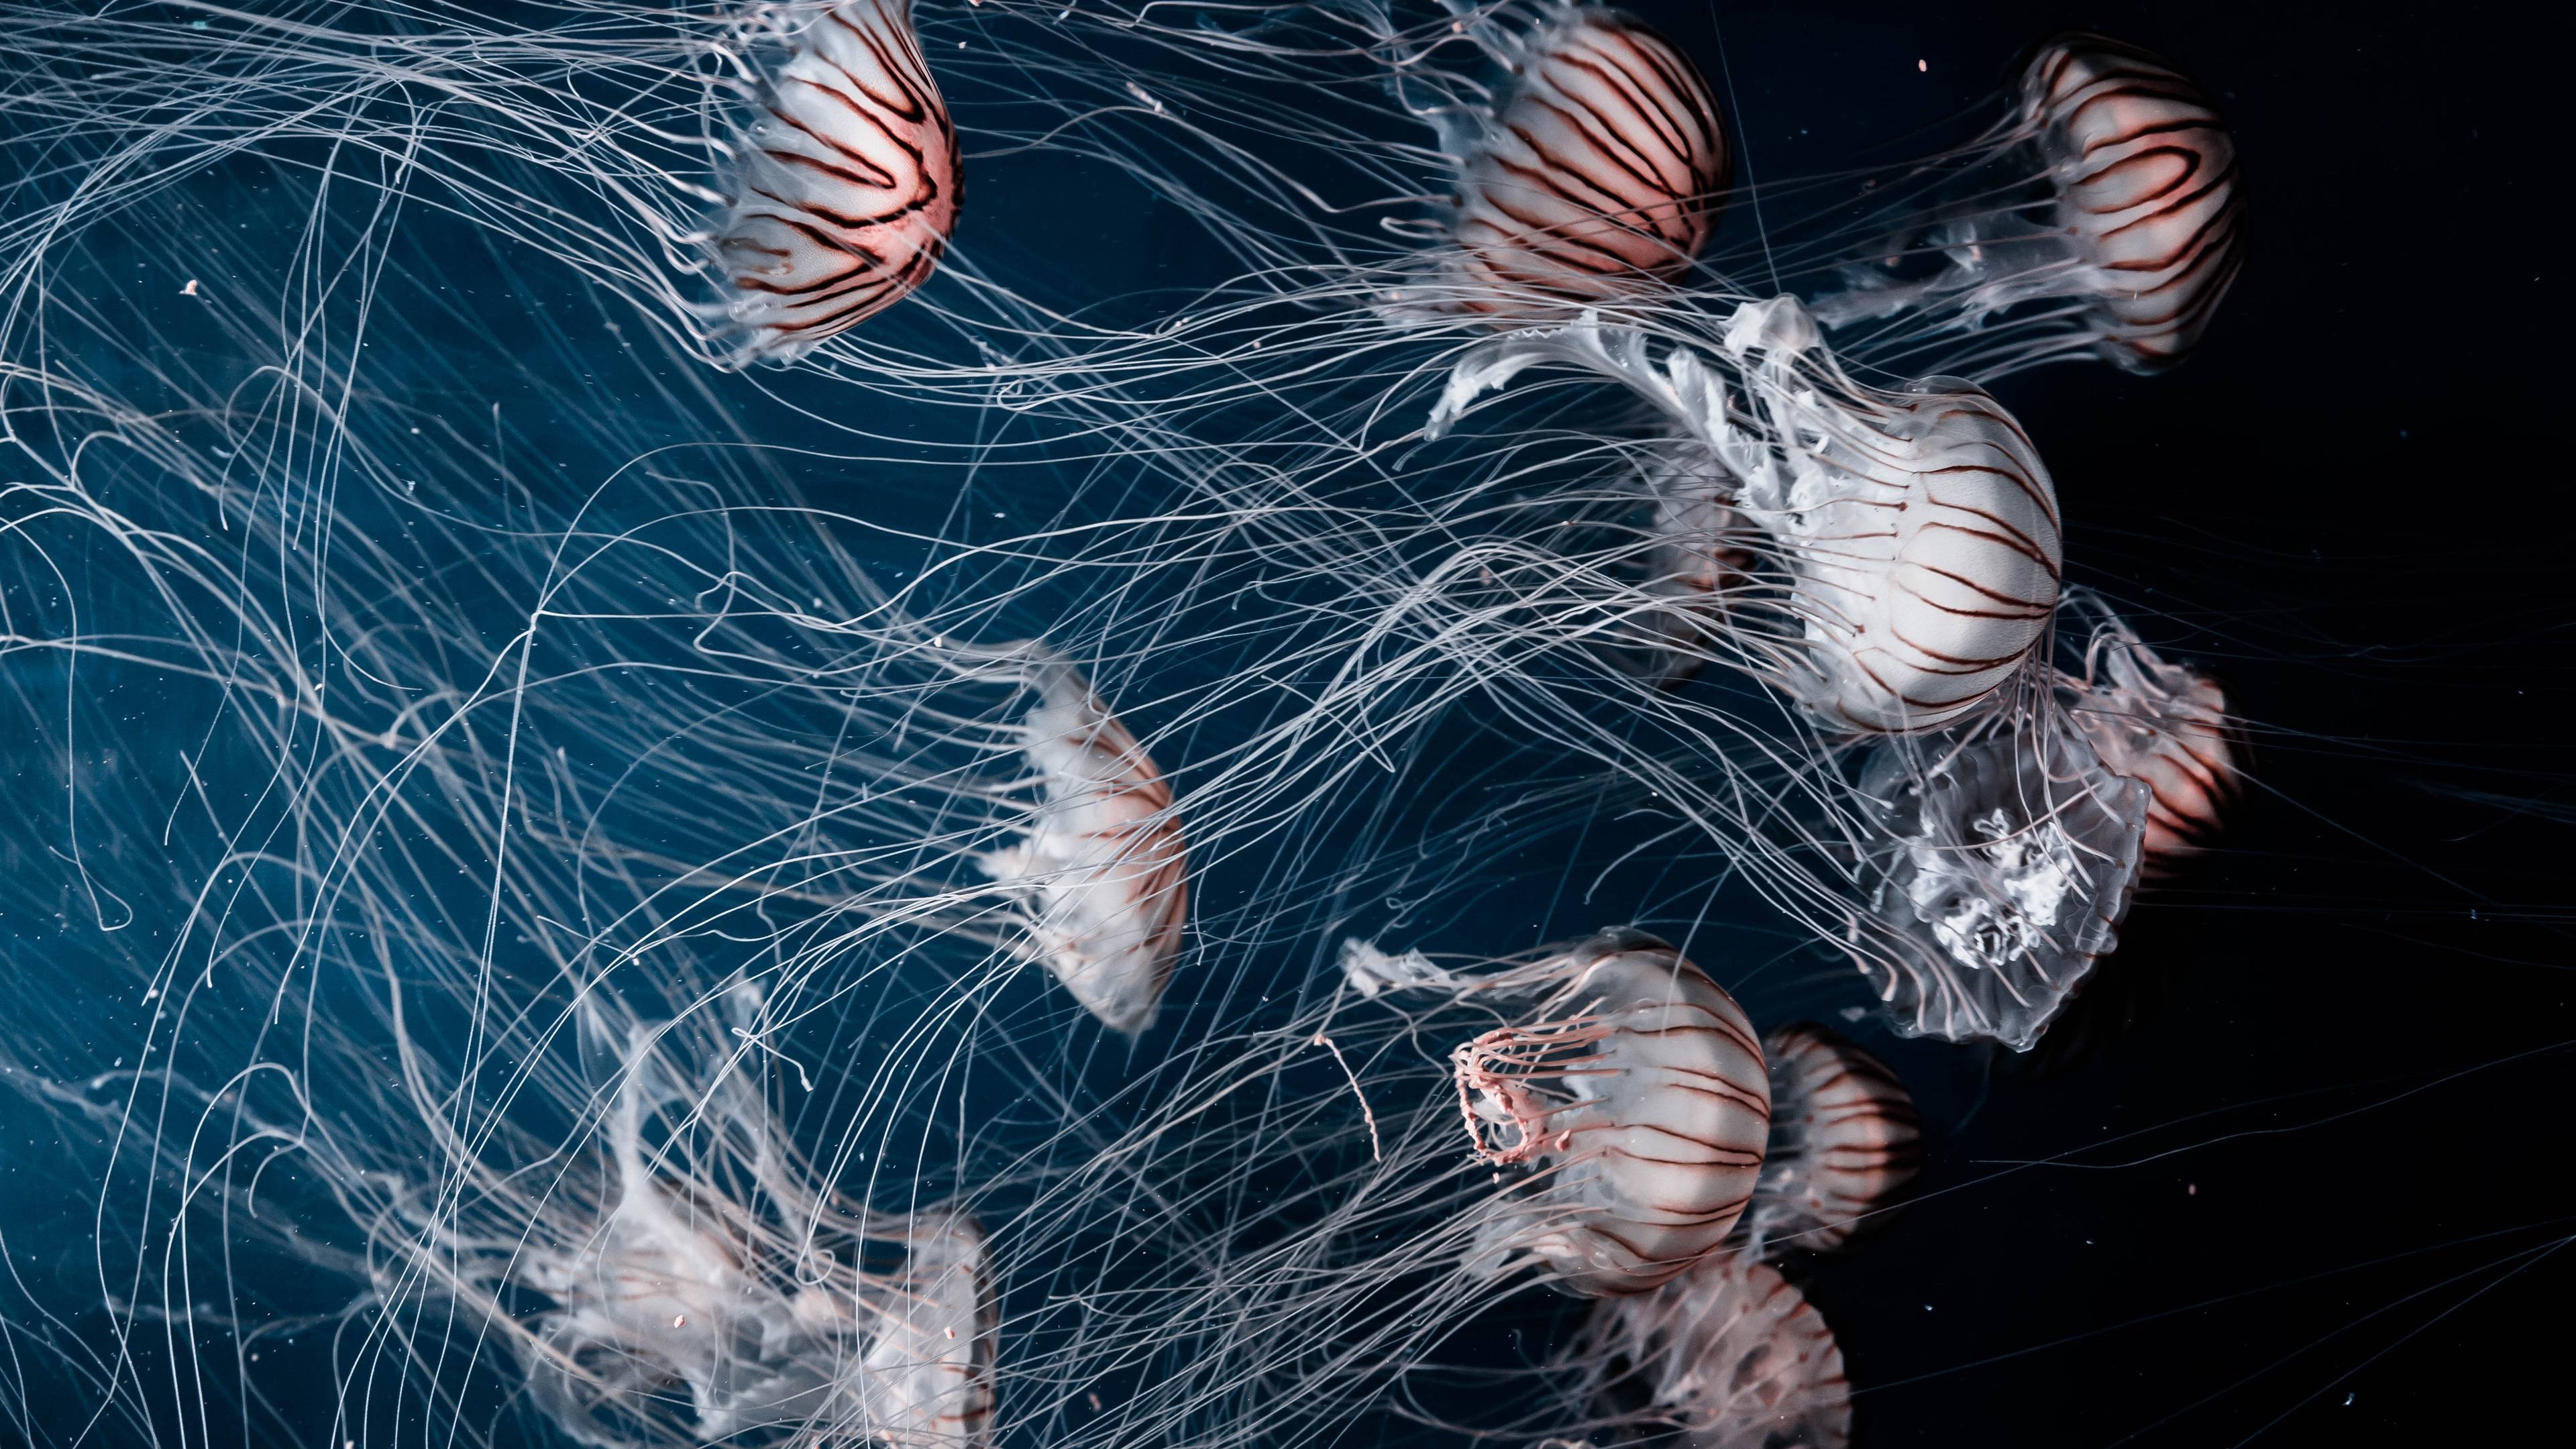 Fondos de pantalla Medusas en animales marinos submarinos y hermosos